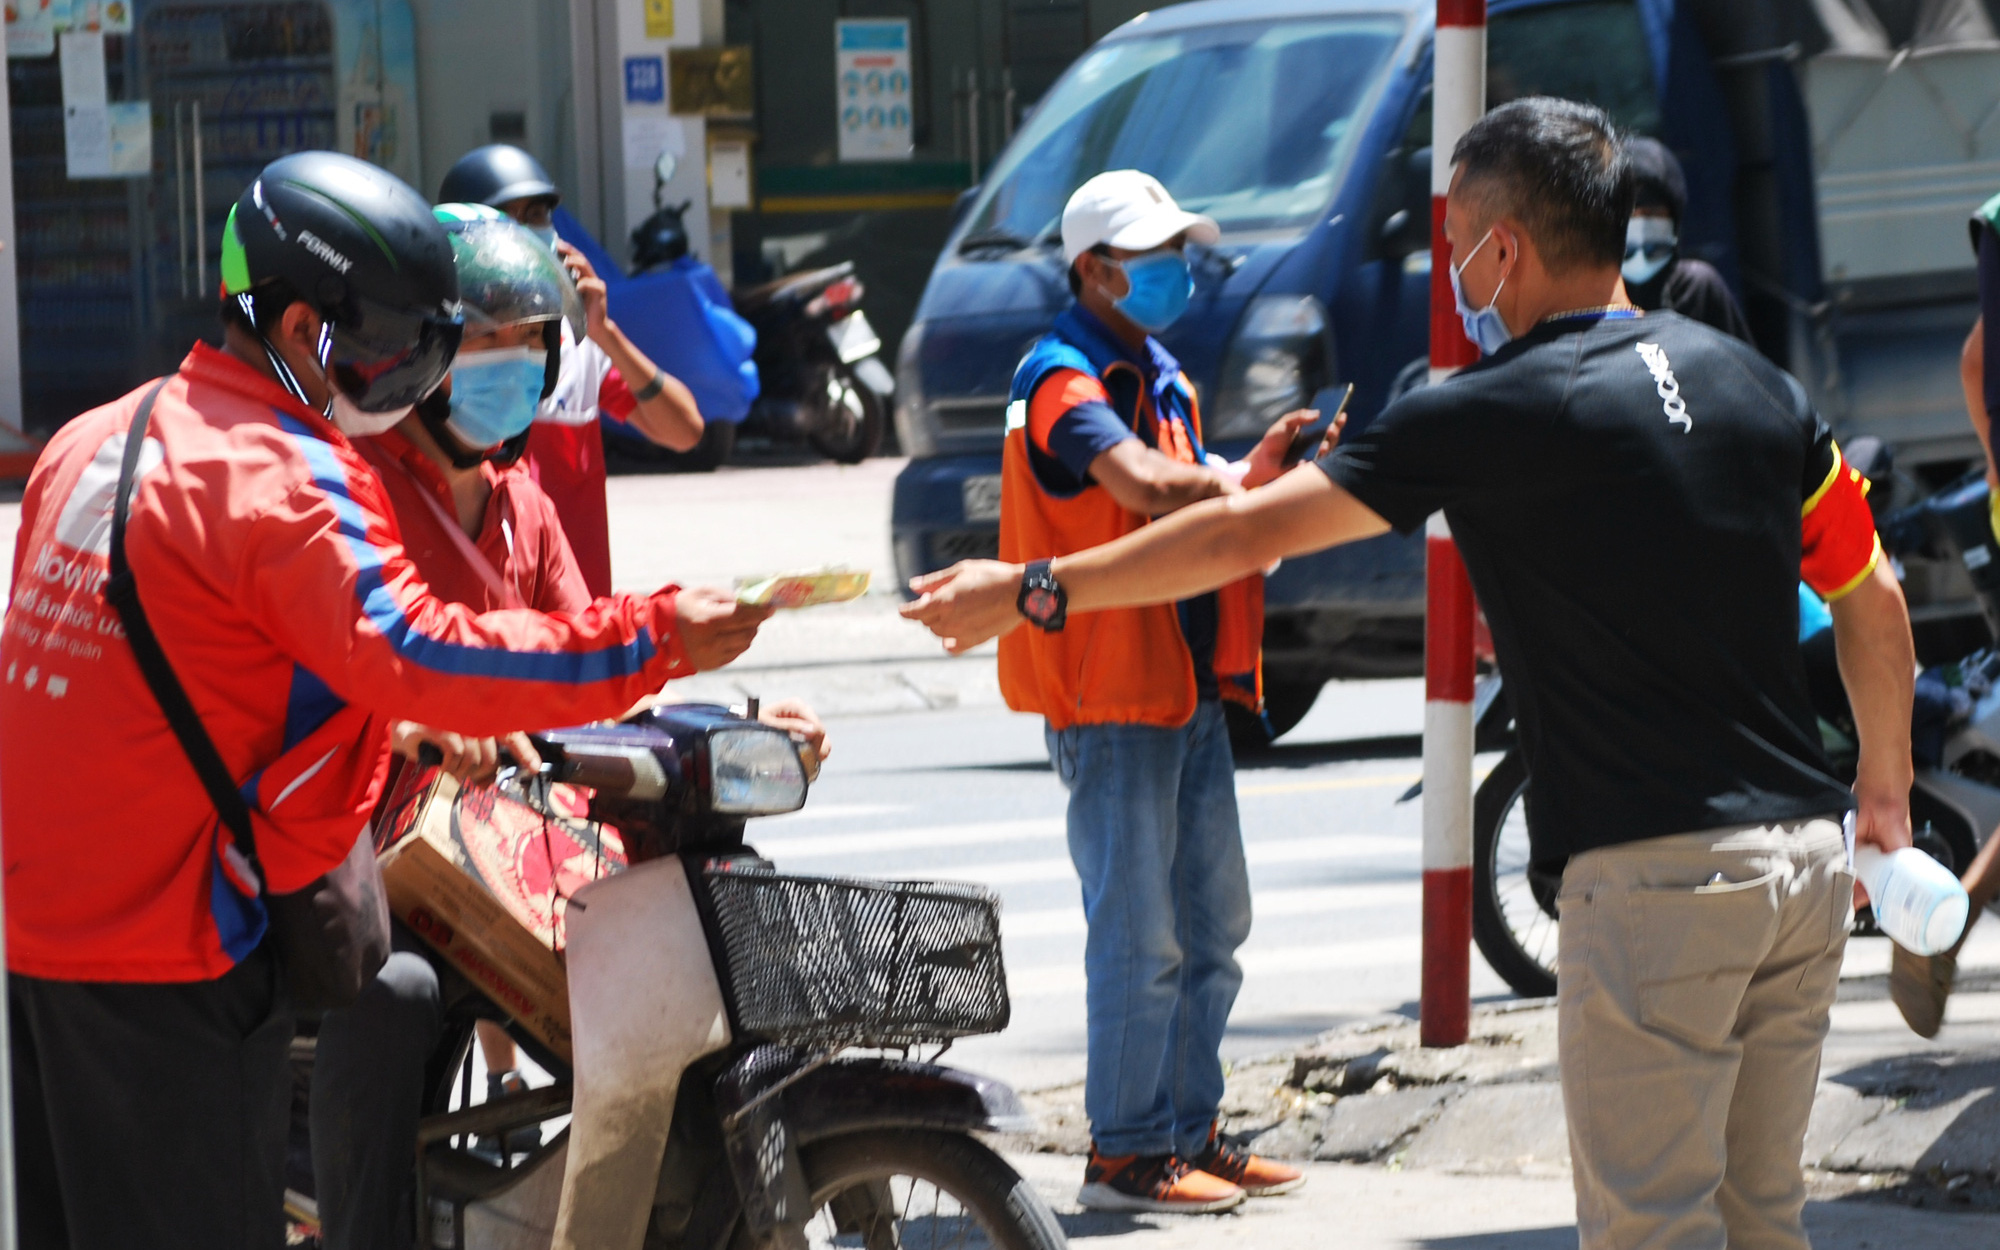 "Bí kíp" giữ vững Vùng xanh của khu chung cư nghìn dân ở Hà Nội: Kiểm soát chặt chẽ người ra-vào, muốn nhận hàng ship cũng phải đúng ngày theo phiếu đi chợ